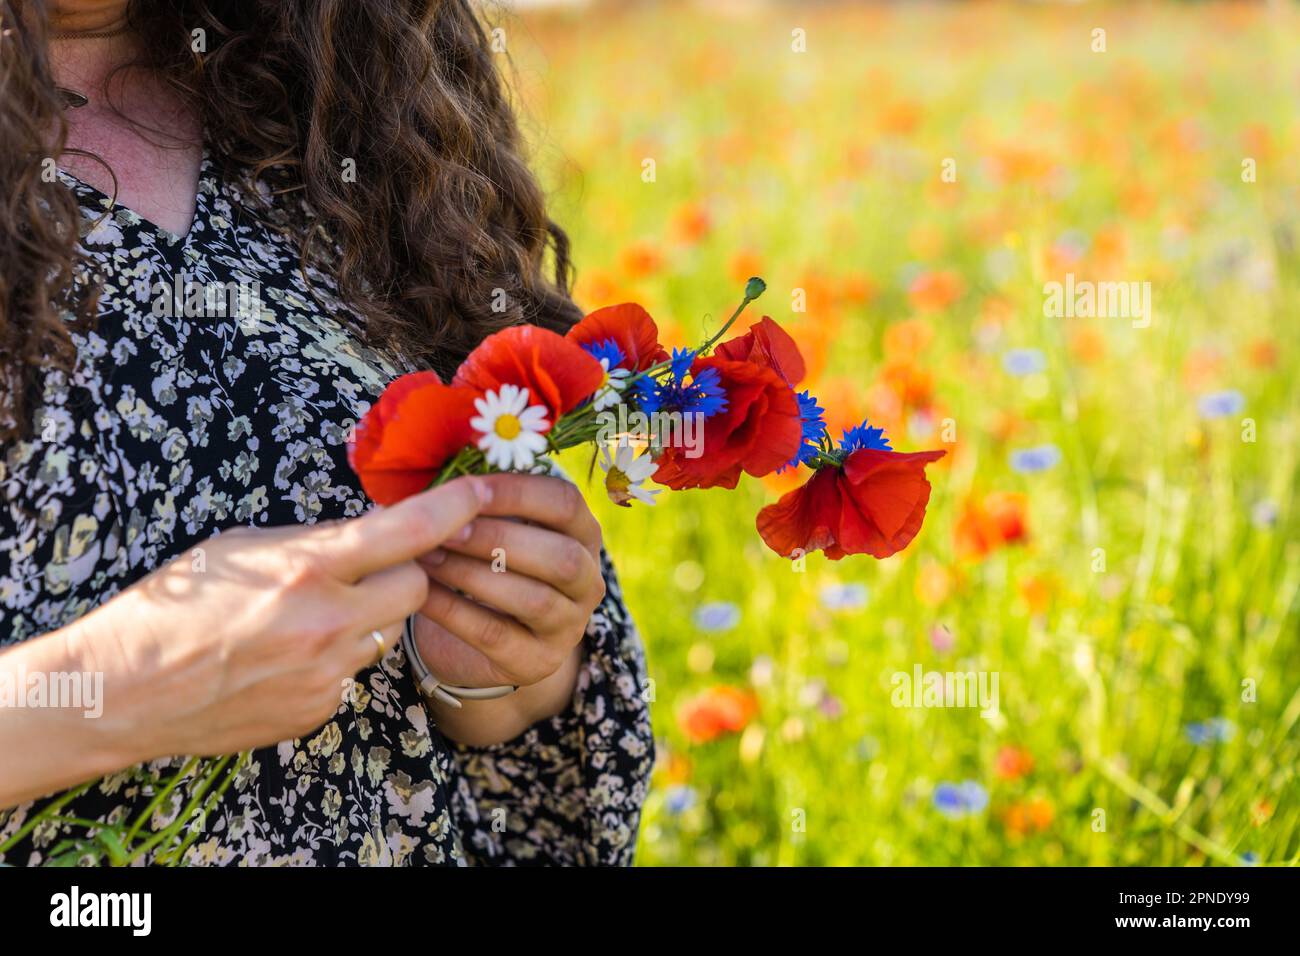 Eine langhaarige, lockige Frau webt einen Kranz aus Wildblumen, Mohn, Gänseblümchen und Maisblumen. Stockfoto